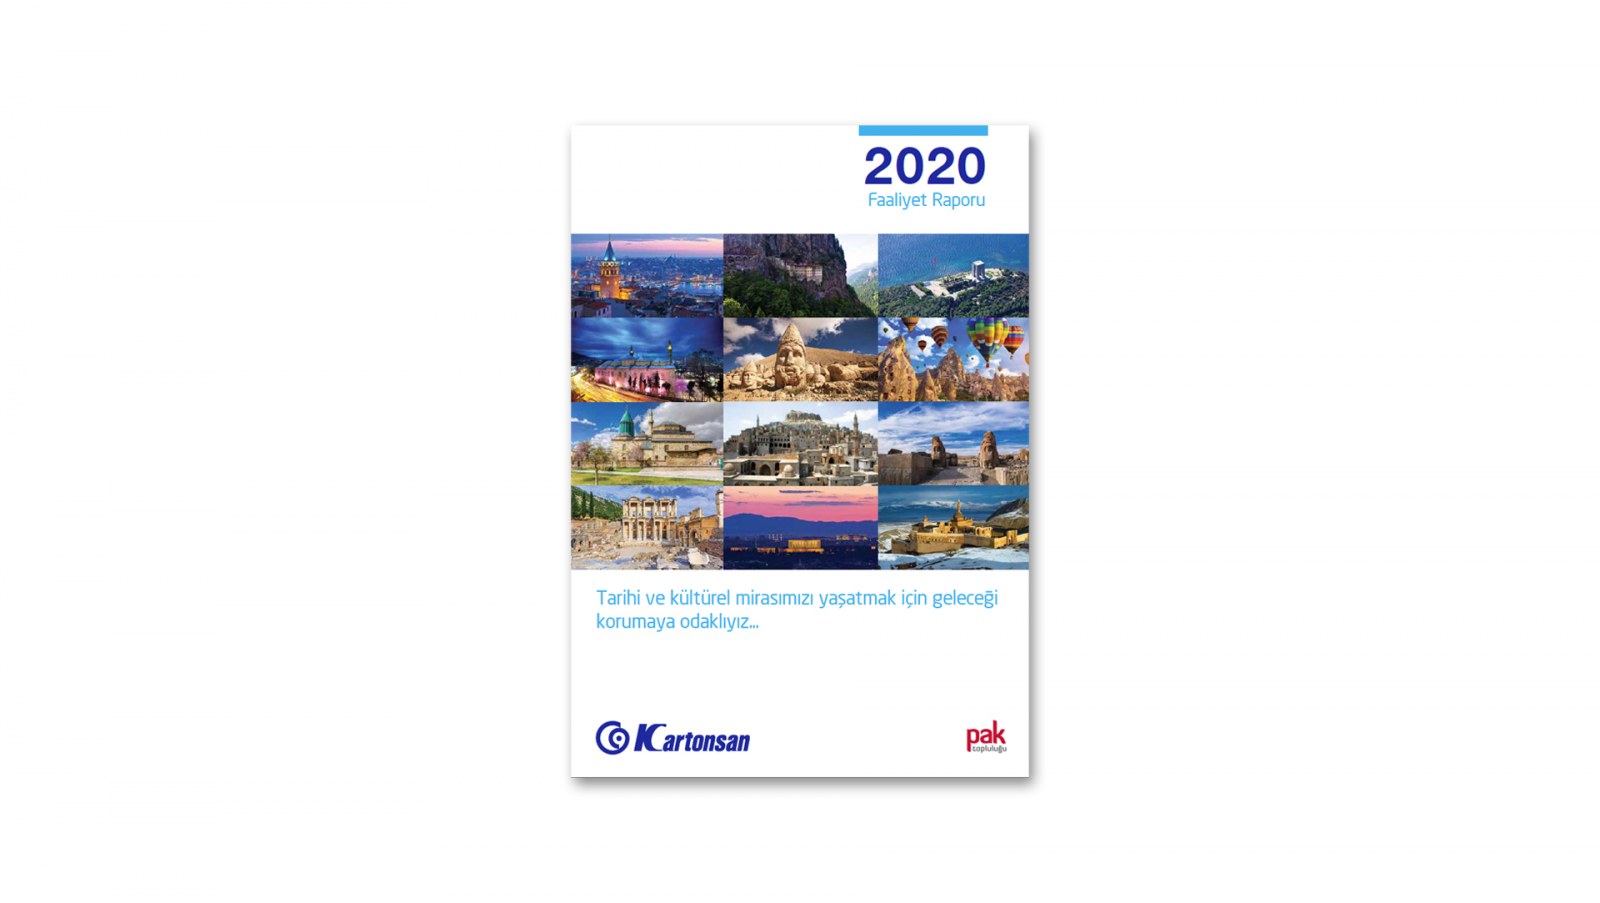 KARTONSAN / 2020 Faaliyet Raporu / 2020 Annual Report